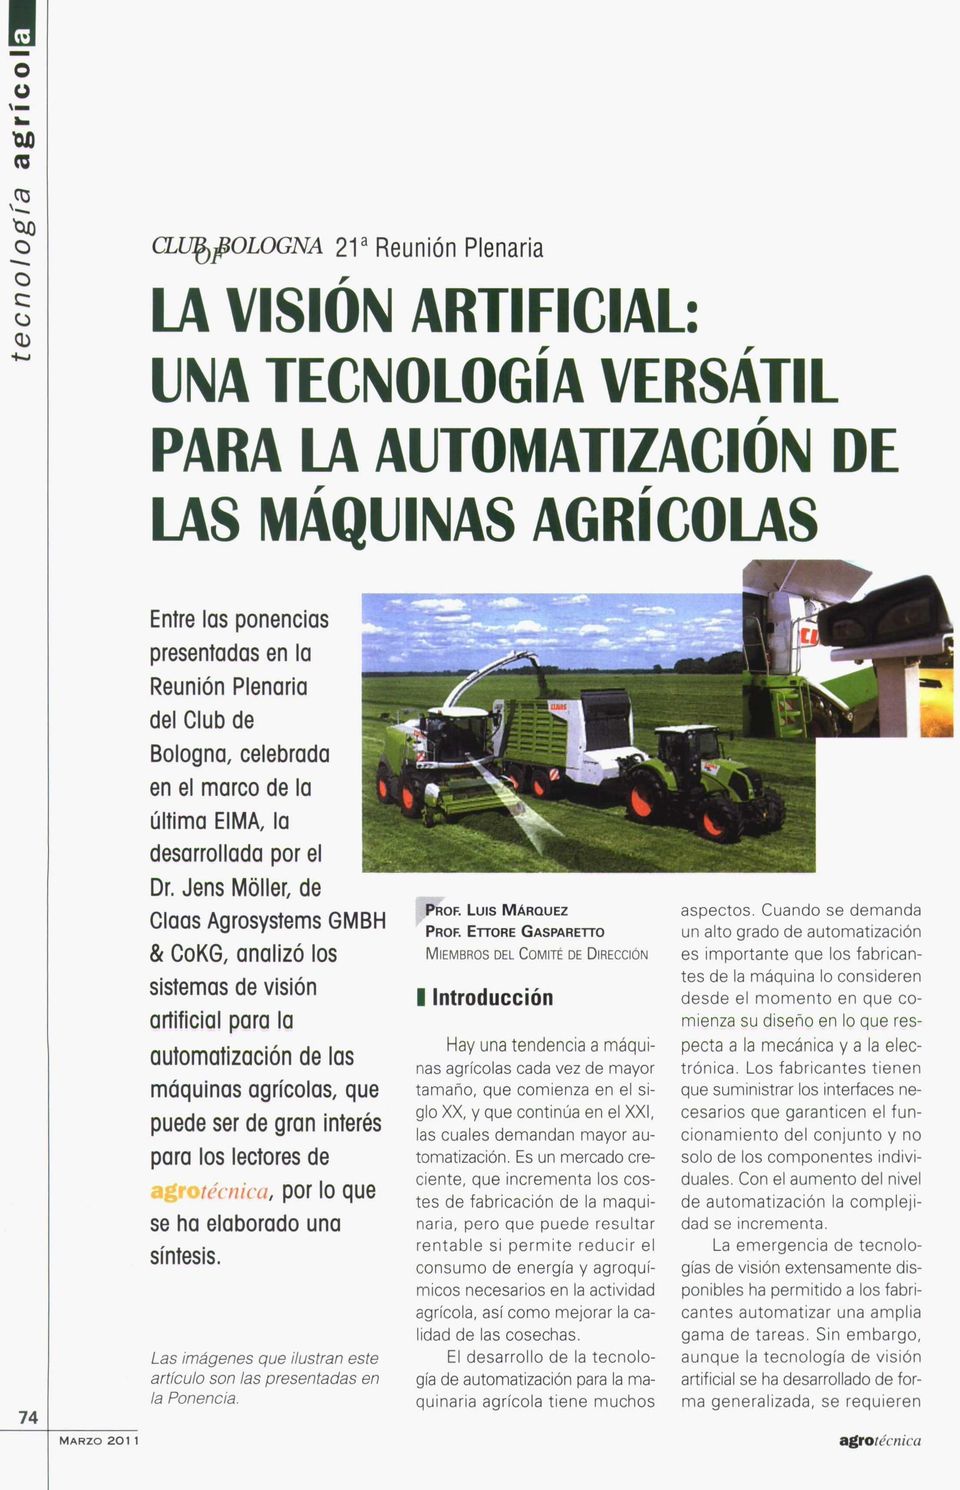 Jens Möller, de Claas Agrosystems GMBH & CoKG, analizó los sistemas de visión artificial para la automatización de las máquinas agrícolas, que puede ser de gran interés para los lectores de por lo